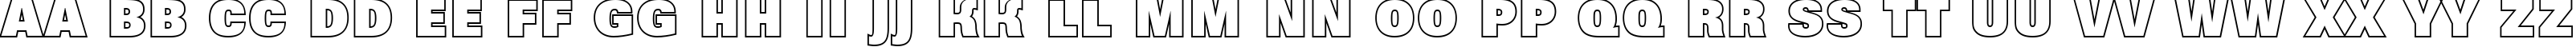 Пример написания английского алфавита шрифтом a_GroticTitulOtlHv